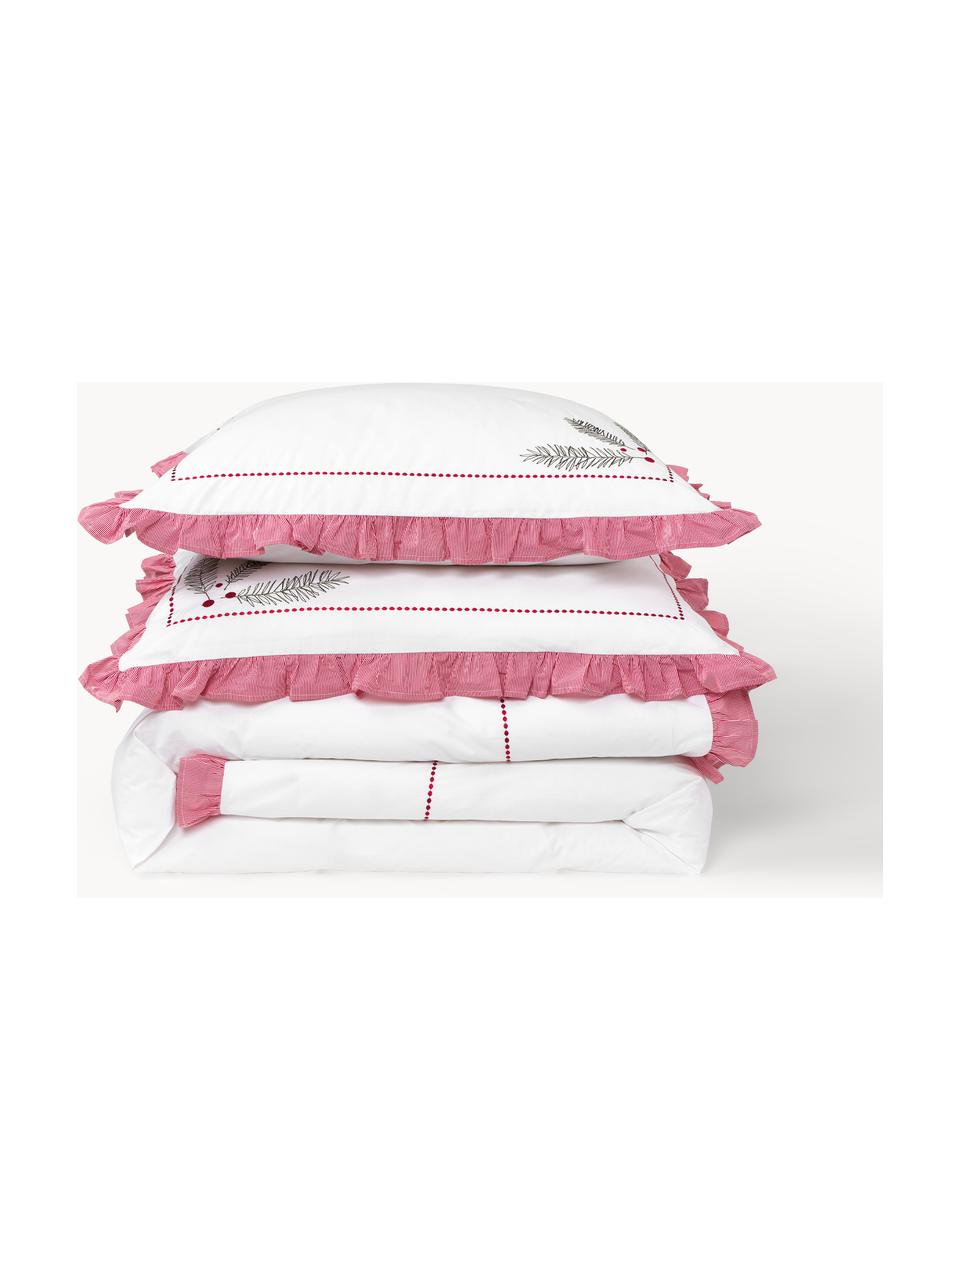 Bestickter Baumwollperkal-Bettdeckenbezug Dina mit Rüschen, Webart: Perkal Perkal ist ein fei, Weiß, Rot, B 200 x L 200 cm